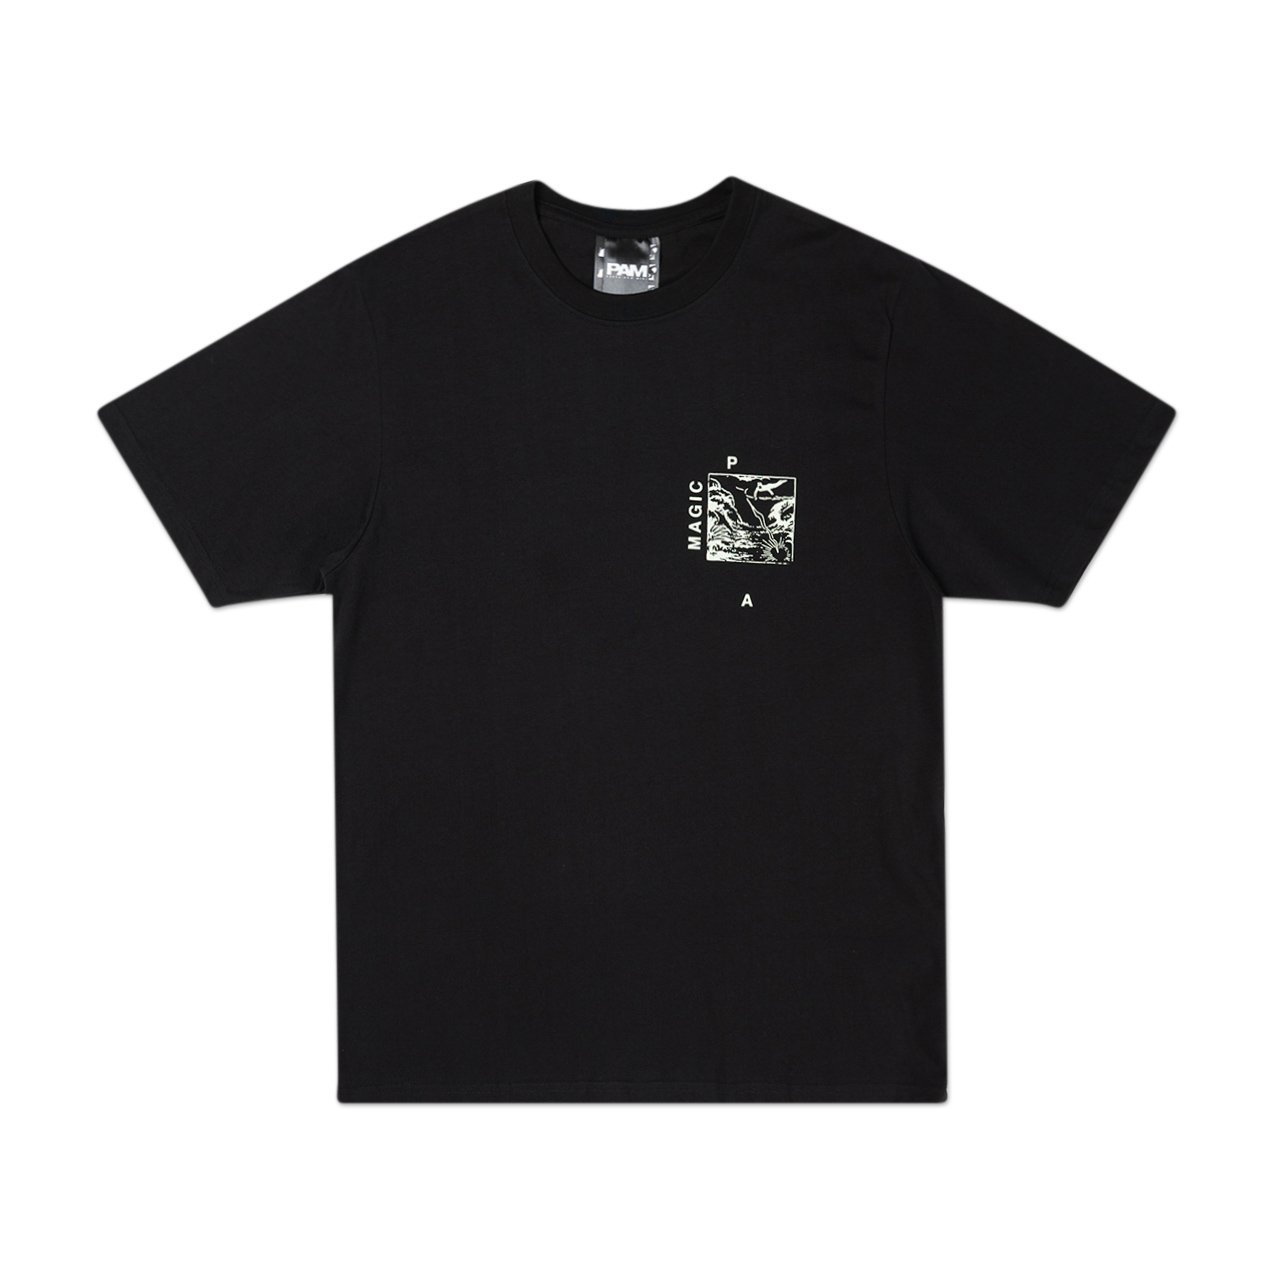 perks and mini version 1.2 s/s t-shirt (black) - 1390/c-b - a.plus - Image - 1